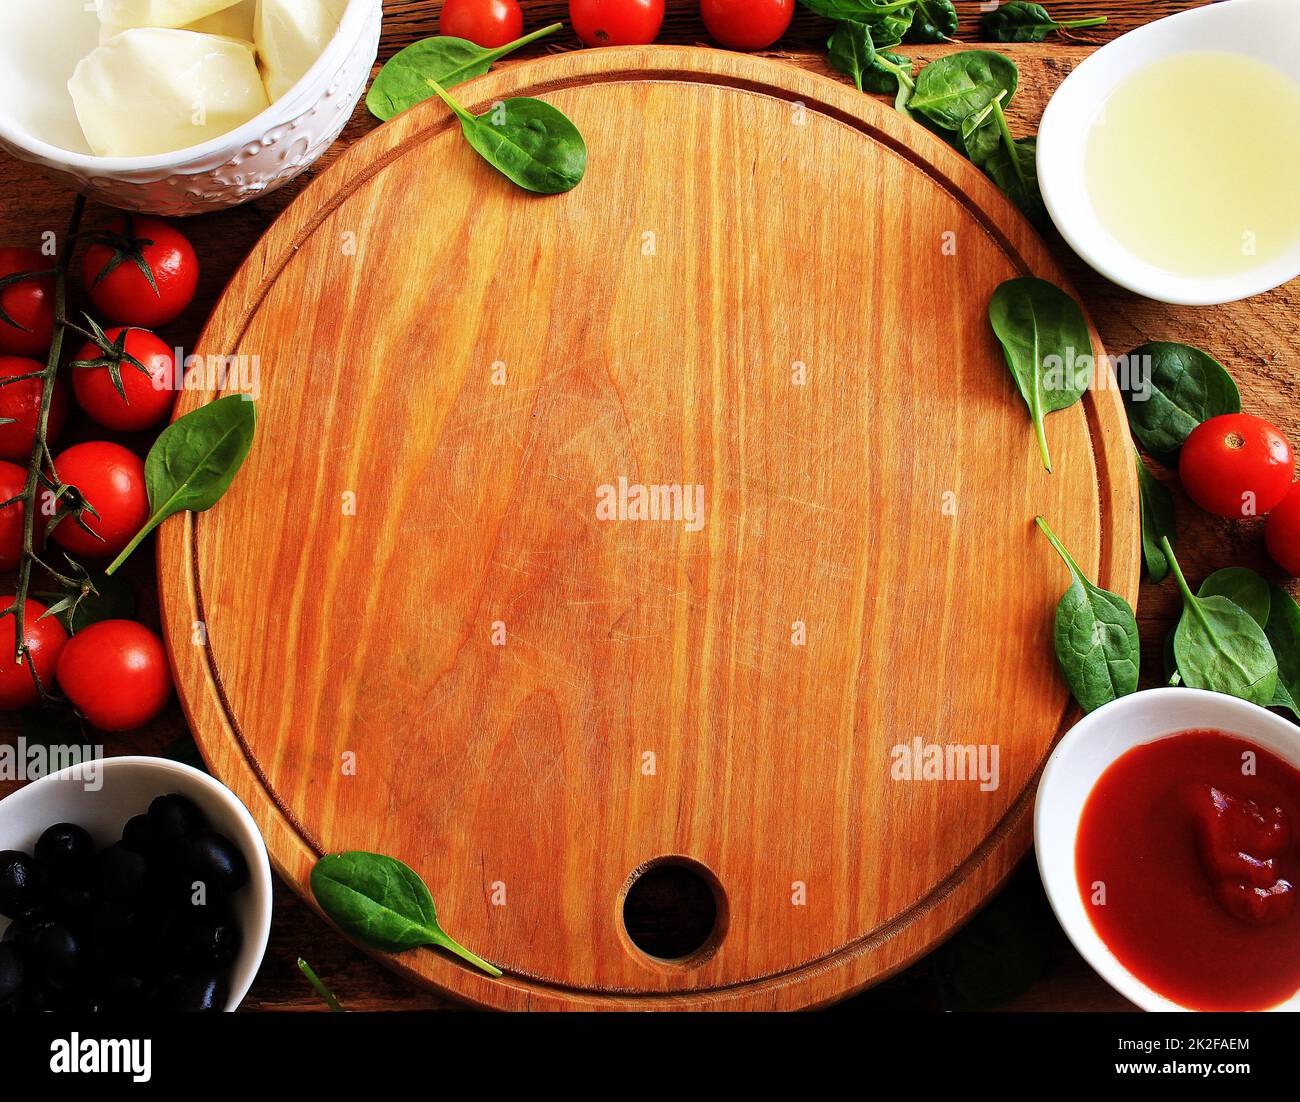 Découpe de bois avec préparation traditionnelle de pizza ingridients: Mozzarella, sauce tomate, basilic, huile d'olive, fromage, épices. Arrière-plan de la table de texture en bois Banque D'Images